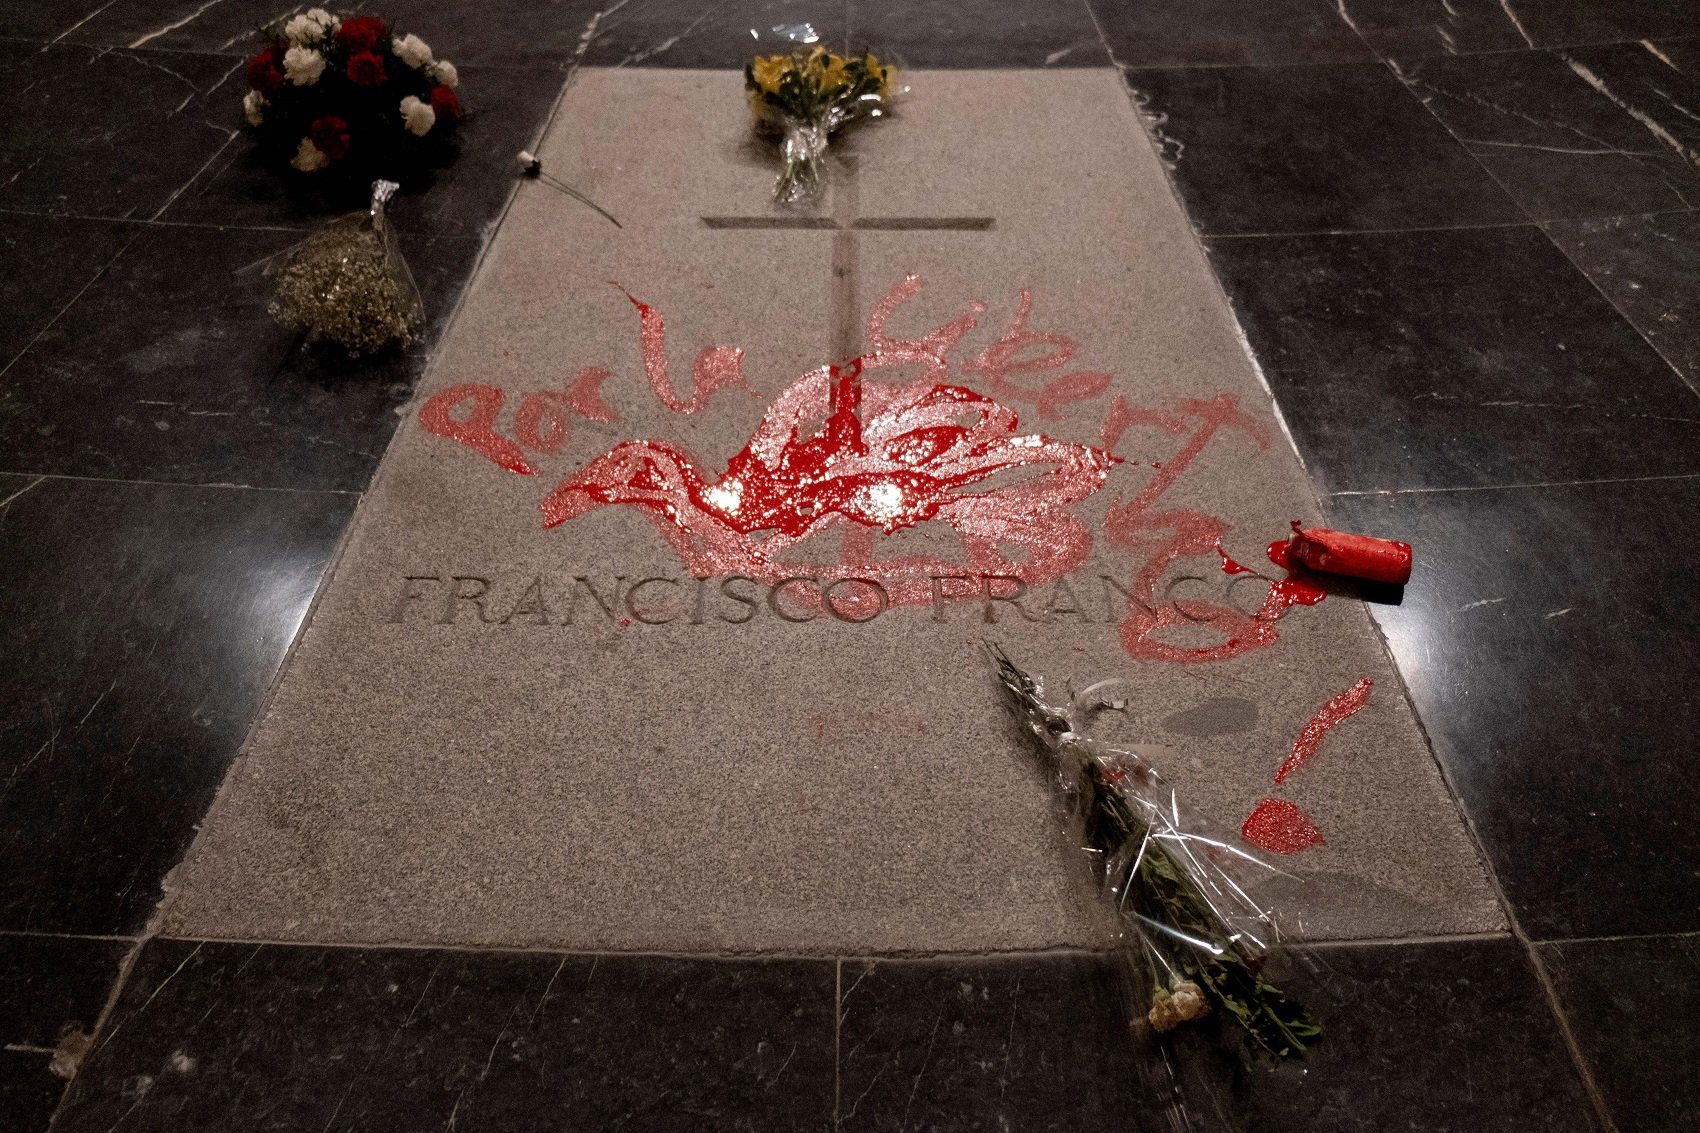 La justícia confirma l'absolució de l'artista que va pintar la tomba de Franco